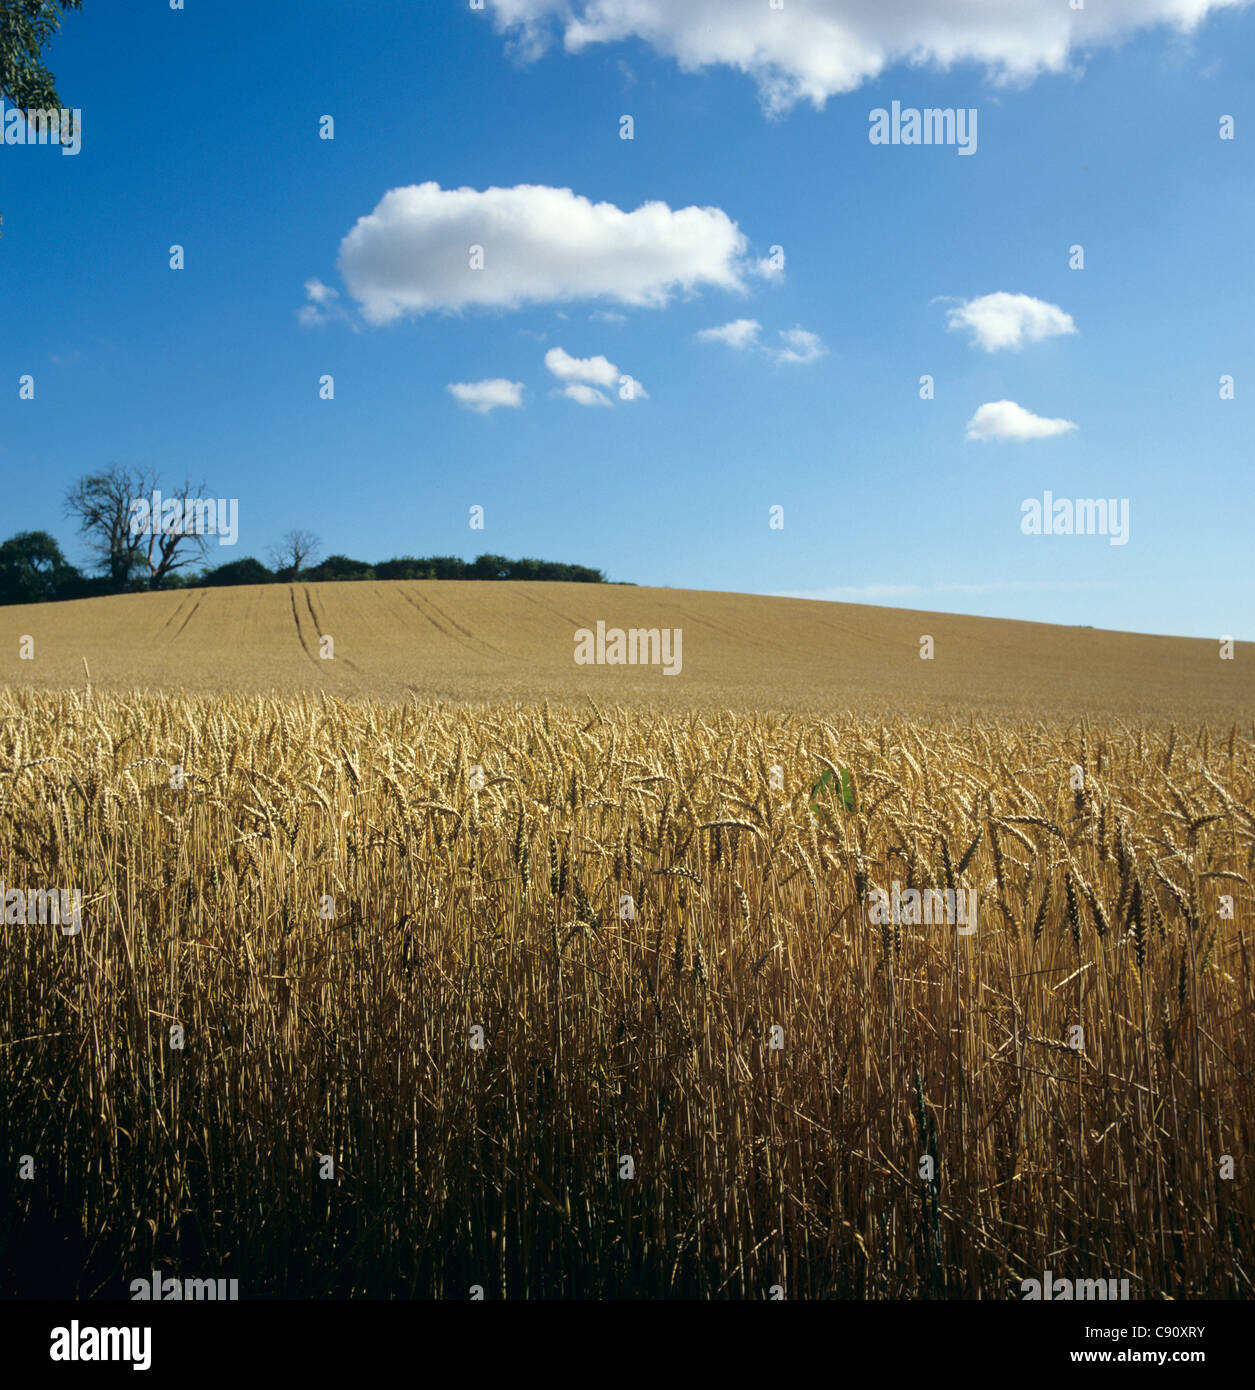 Reife Weizen Ernte in der Nähe von Ernte an einem feinen Sommertag mit blauem Himmel & Wolken Stockfoto